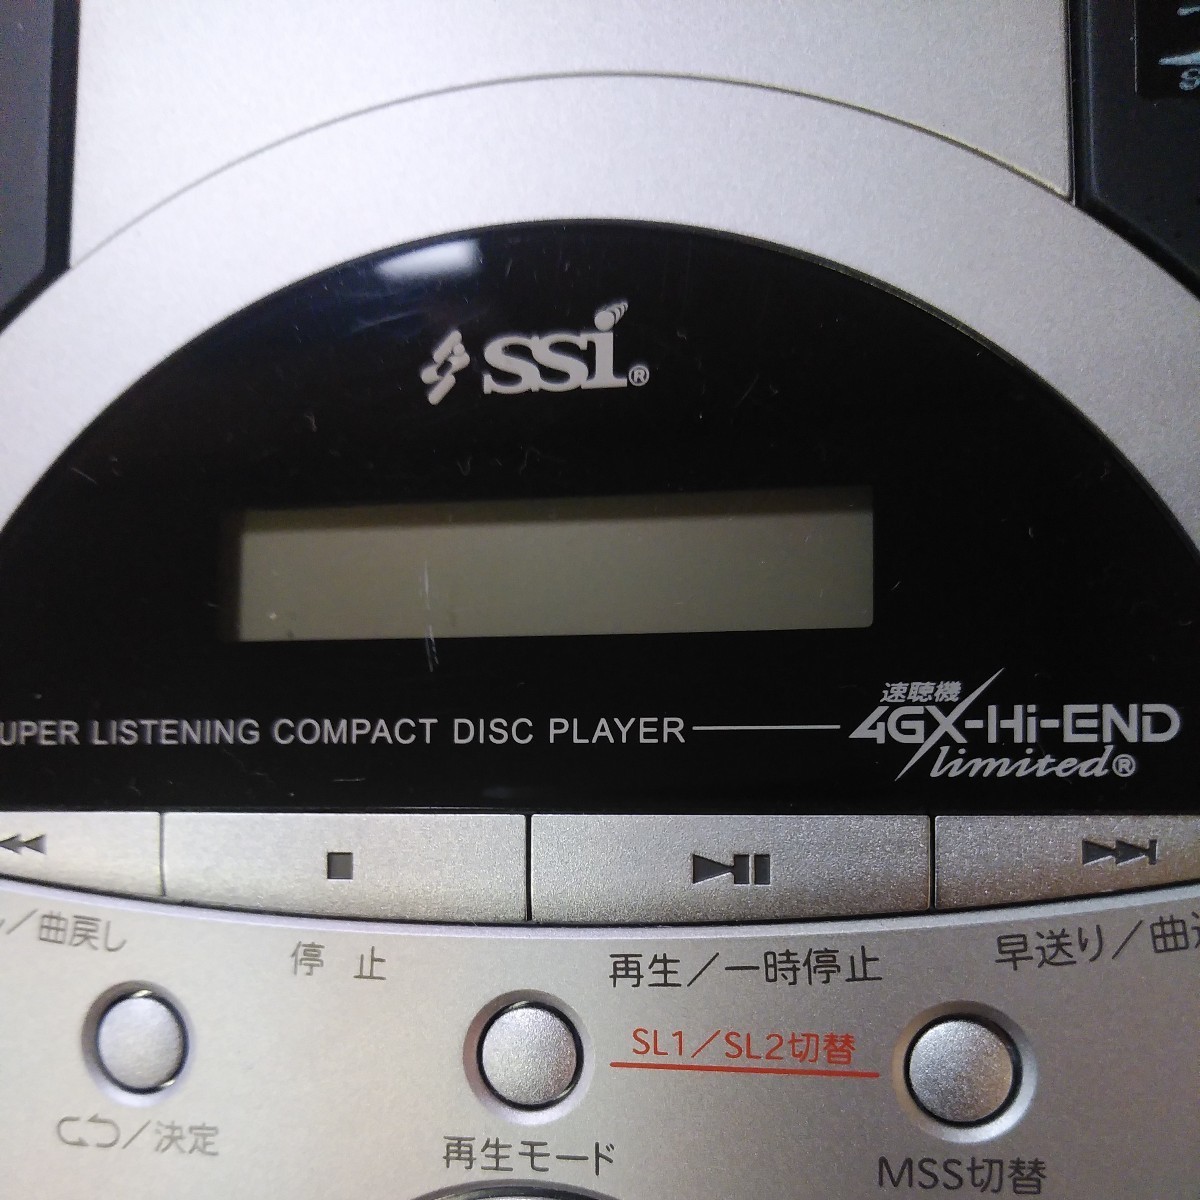 エスエスアイ 4GX-Hi-END Limited 速聴機 SSI CDプレーヤー スピード